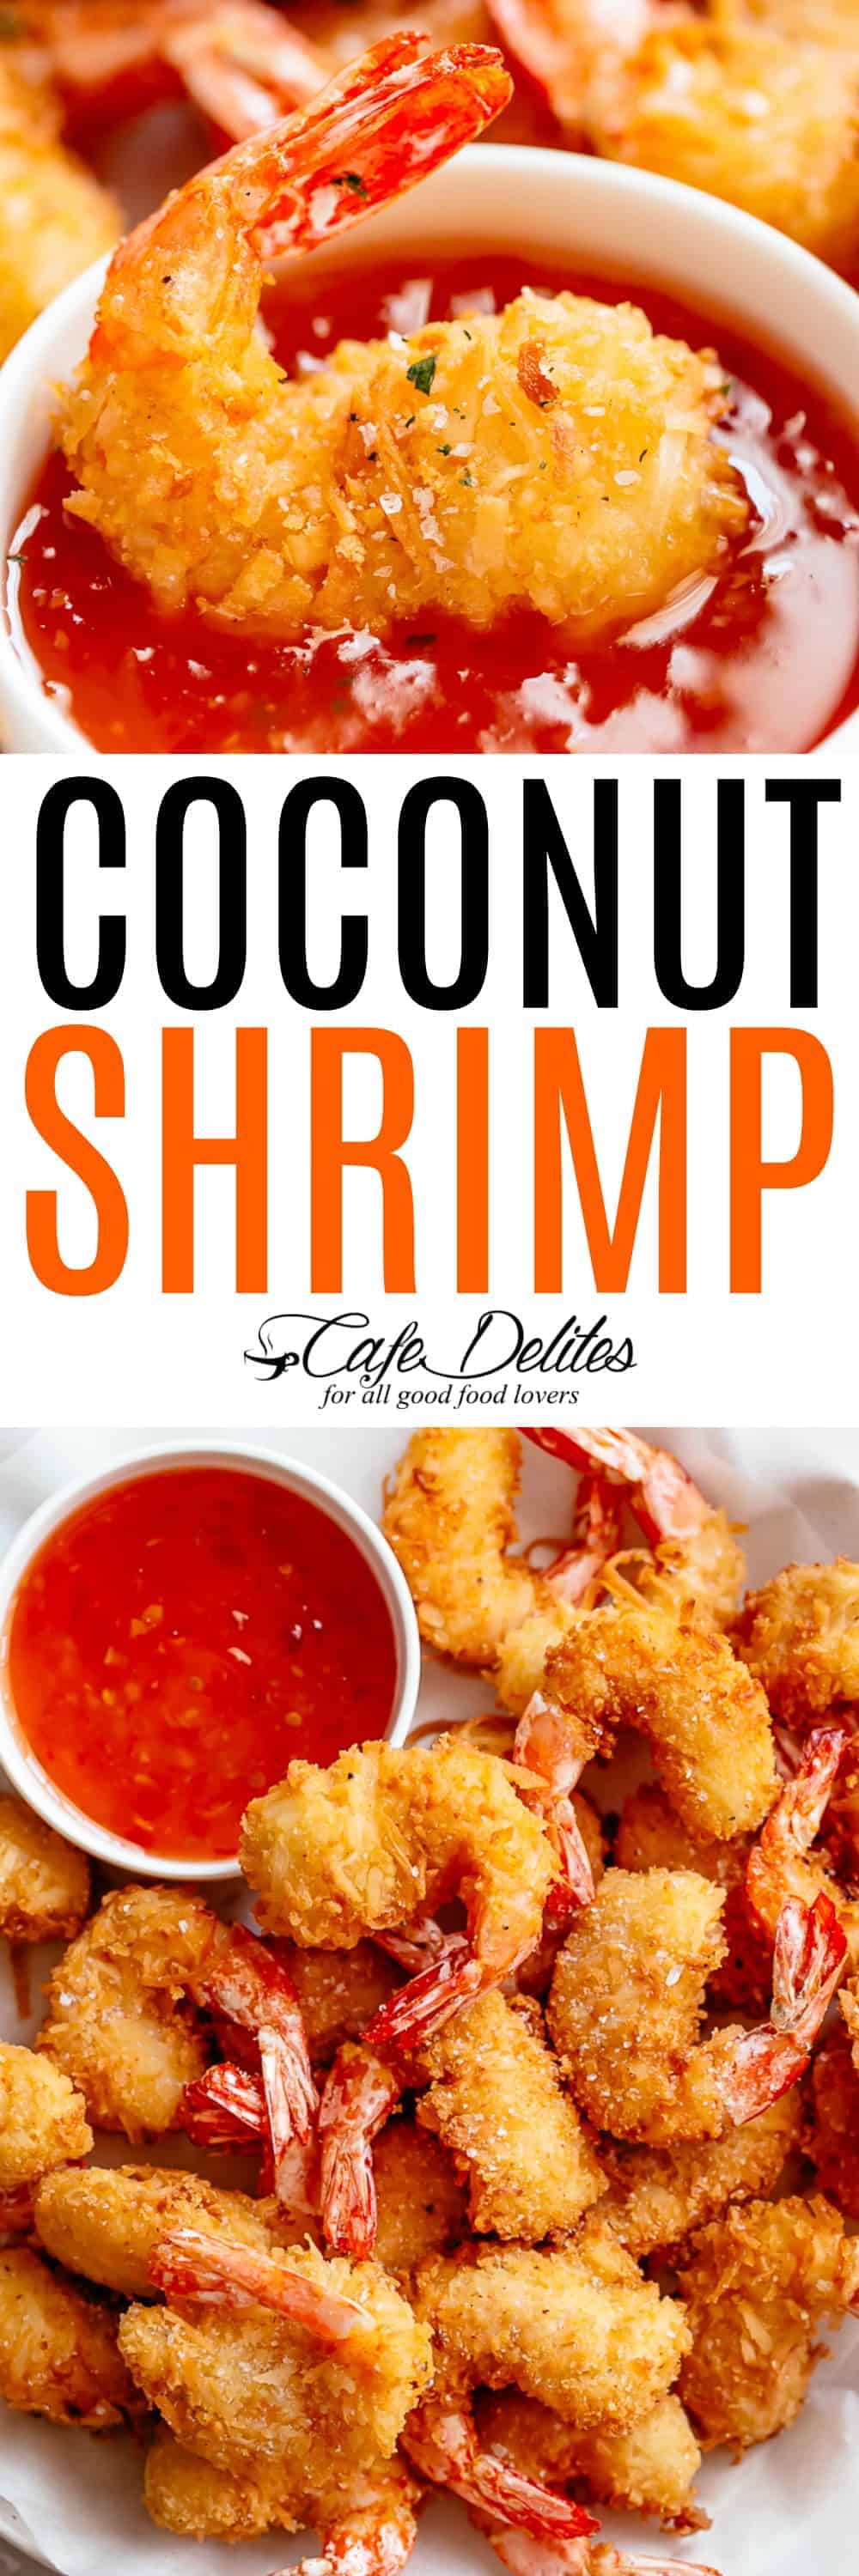 Coconut Shrimp - Cafe Delites